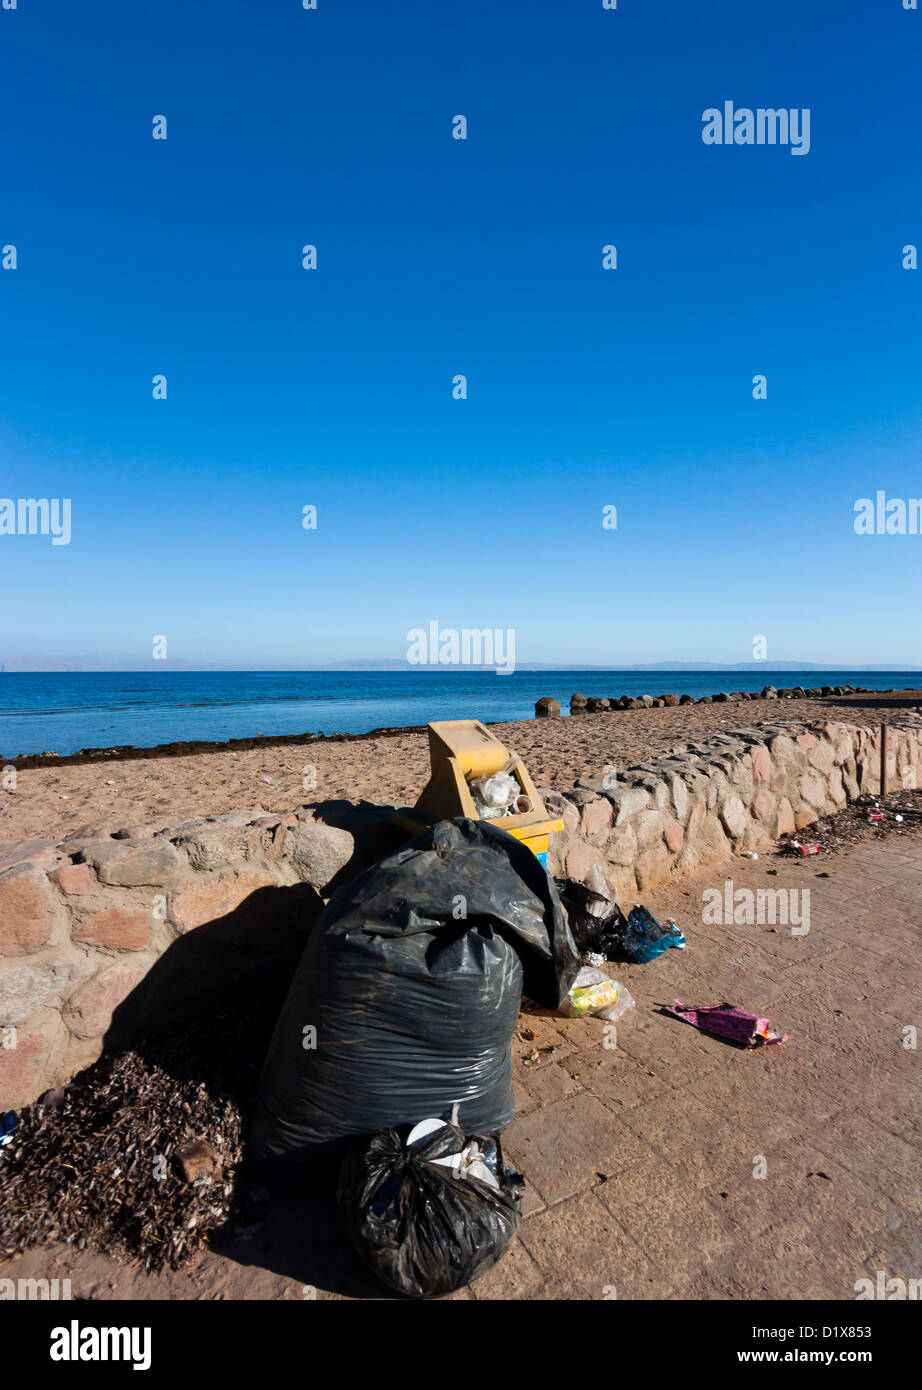 Traboccante abbandonato i bidoni e sacchi della spazzatura sinistra accanto ad una spiaggia tropicale Foto Stock